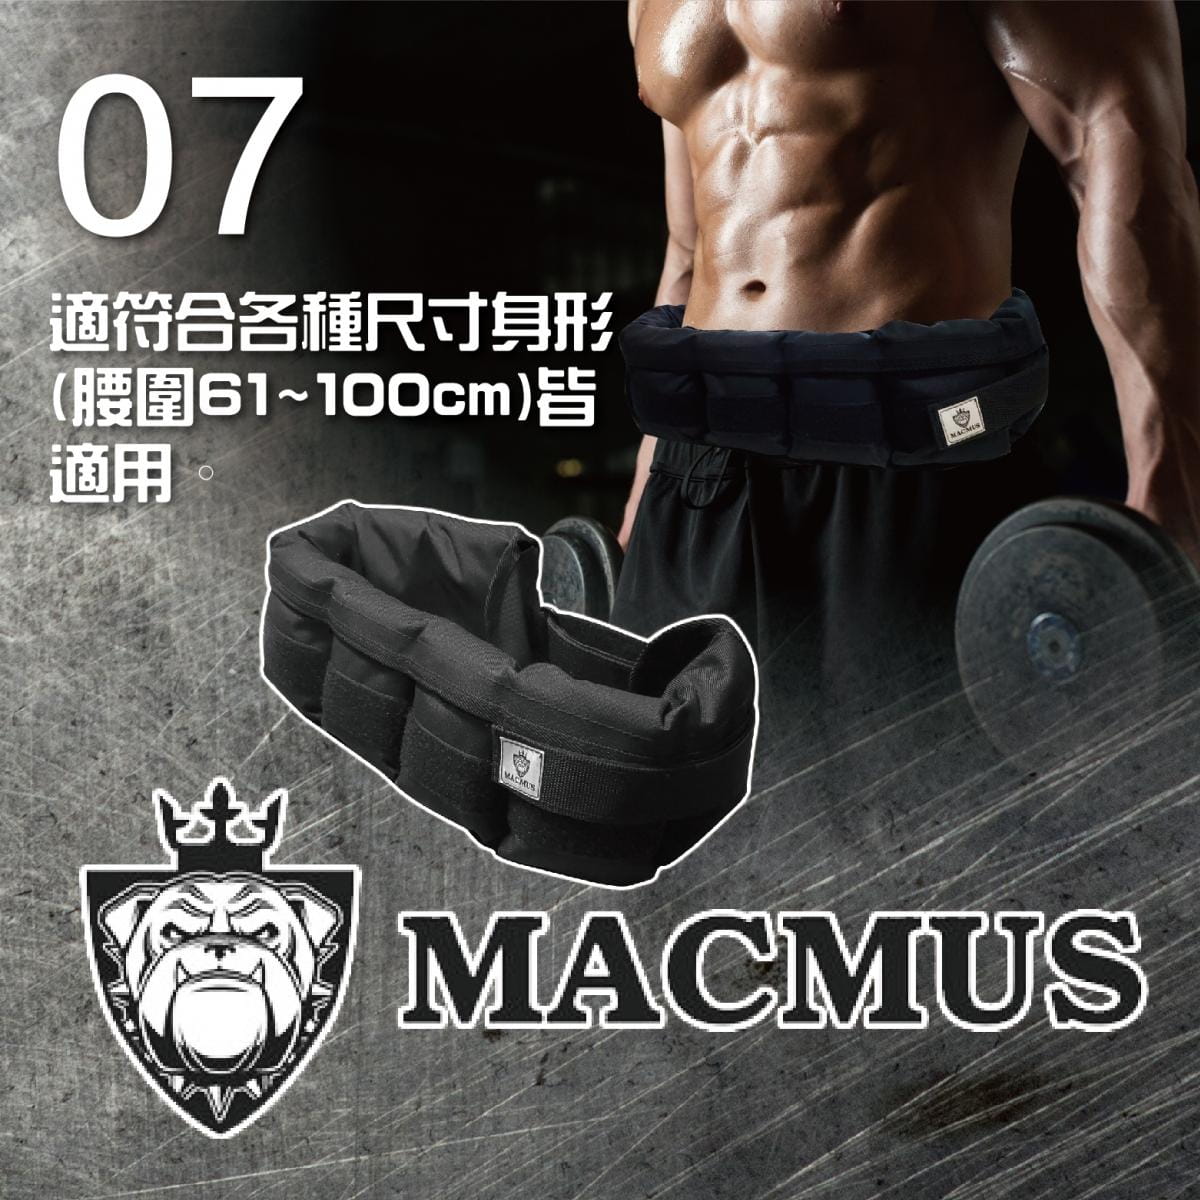 【MACMUS】9.2公斤負重腰帶｜8格式可調整重訓腰帶｜強化核心肌群鍛鍊腰部肌肉 5